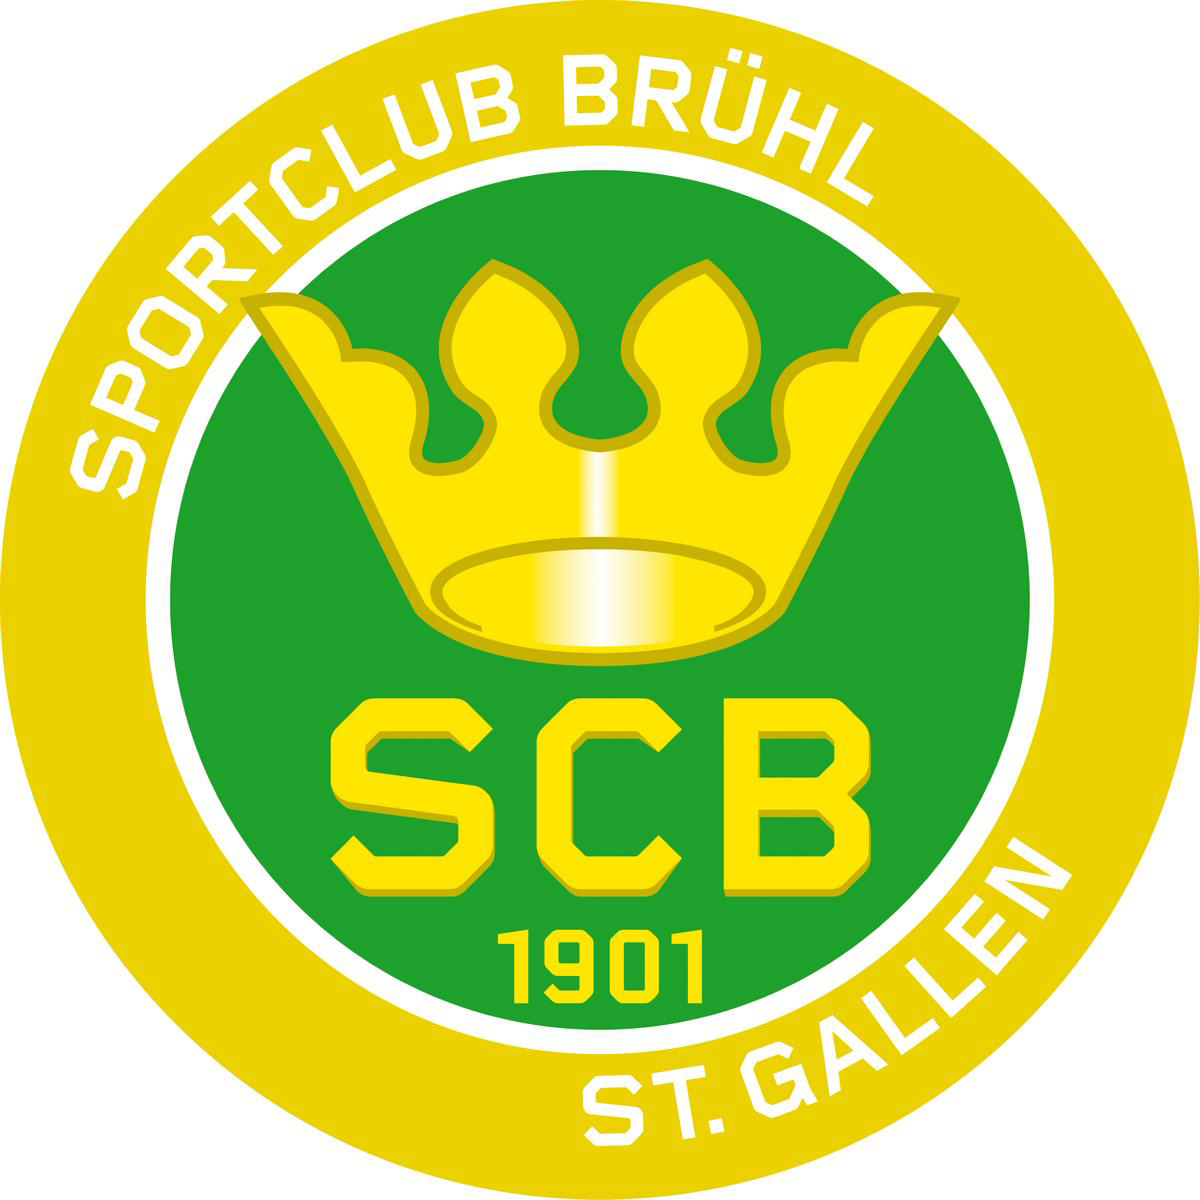 Sc_bruehl_sg_logo